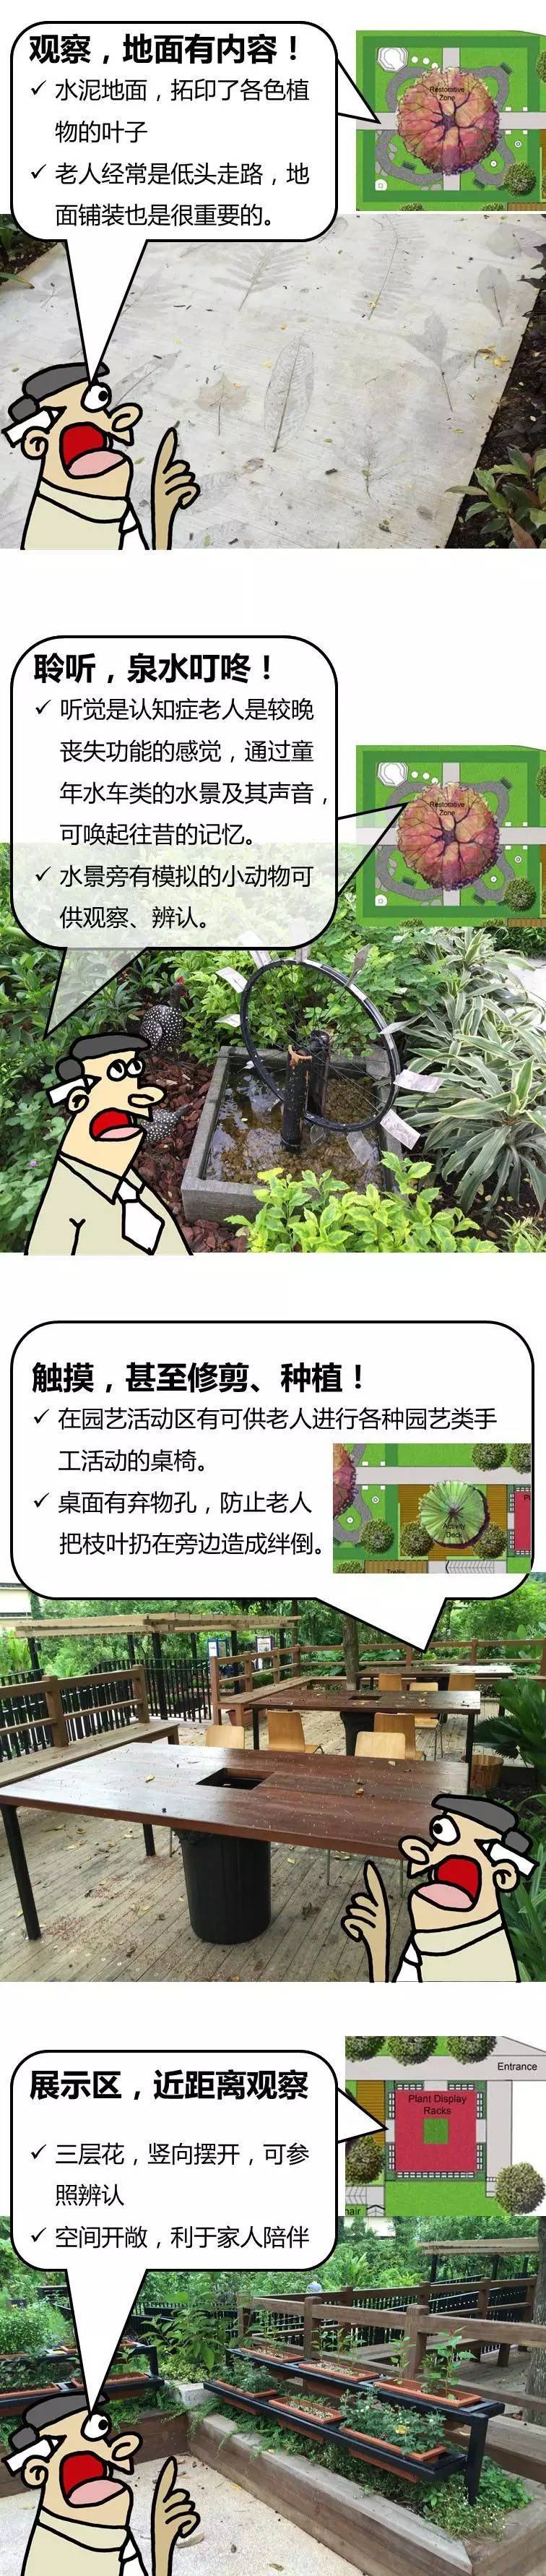 新加坡建了个能治疗老年痴呆的花园